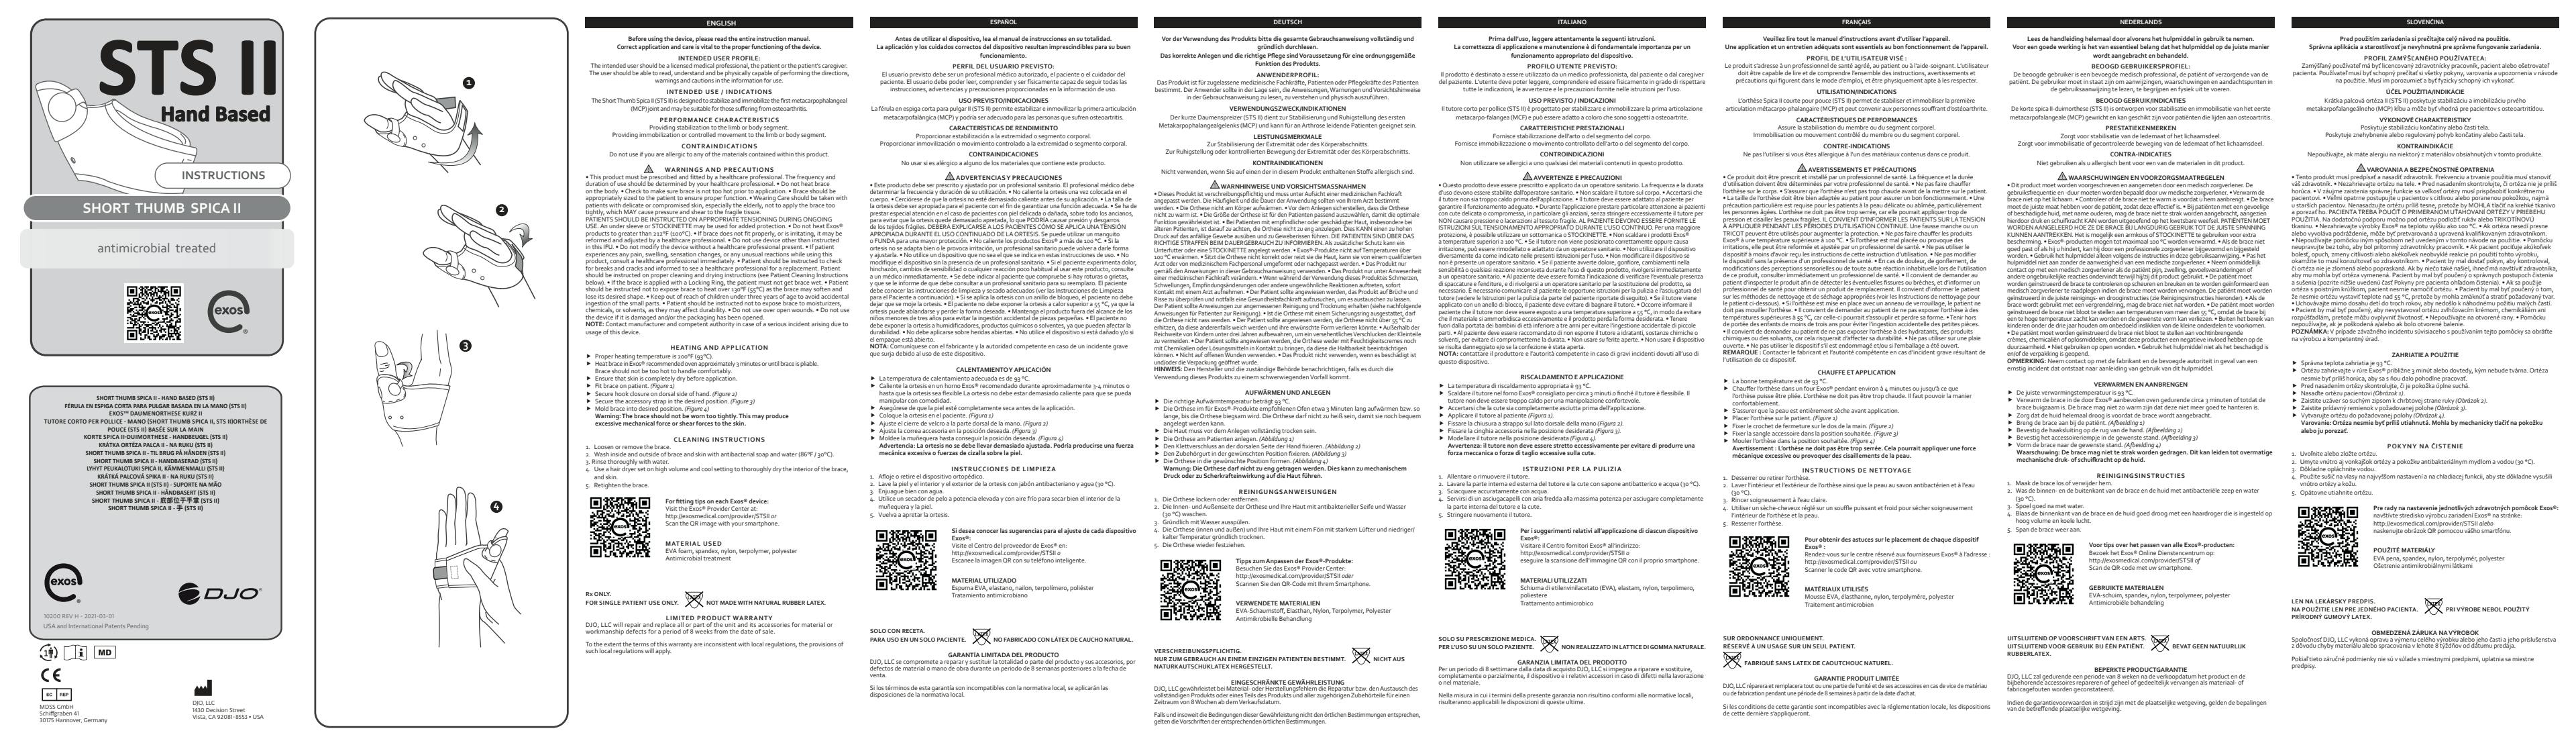 Gebrauchsanleitung_EXOS_Polax_10200-REV-H-2021-03-01.pdf